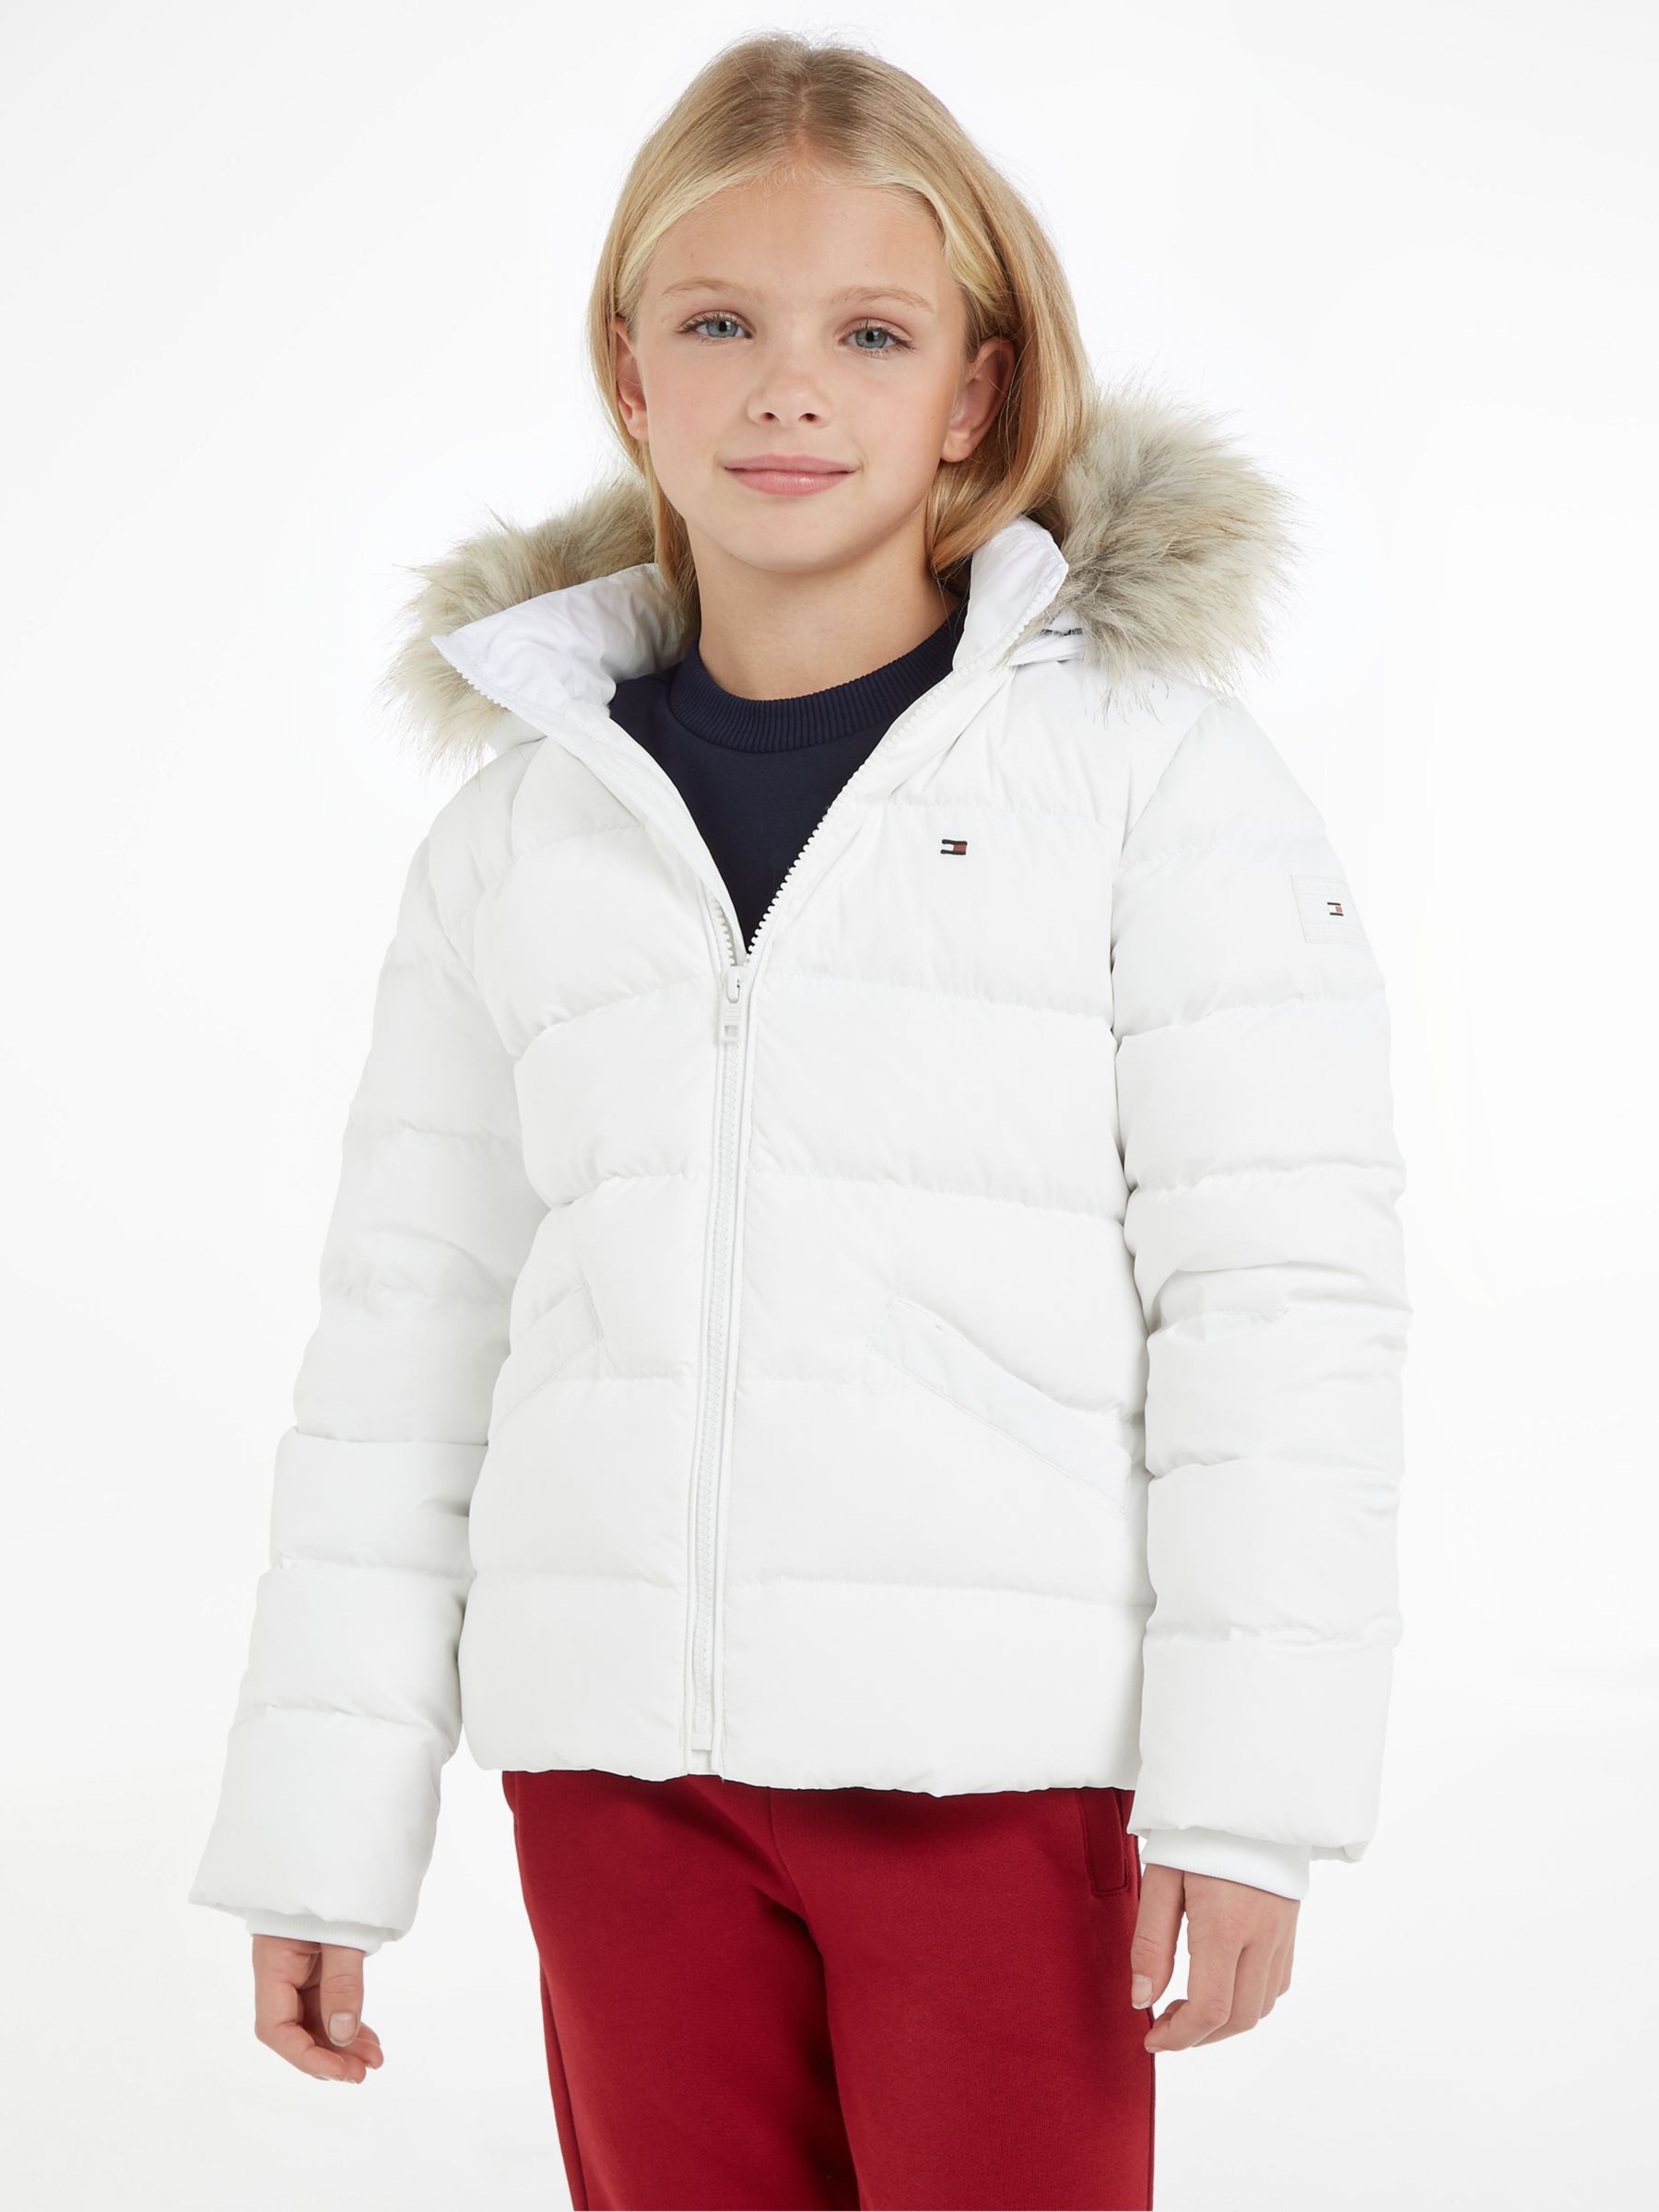 Tommy Hilfiger Kids' Essential Fur Trim Hooded Jacket, White at John ...